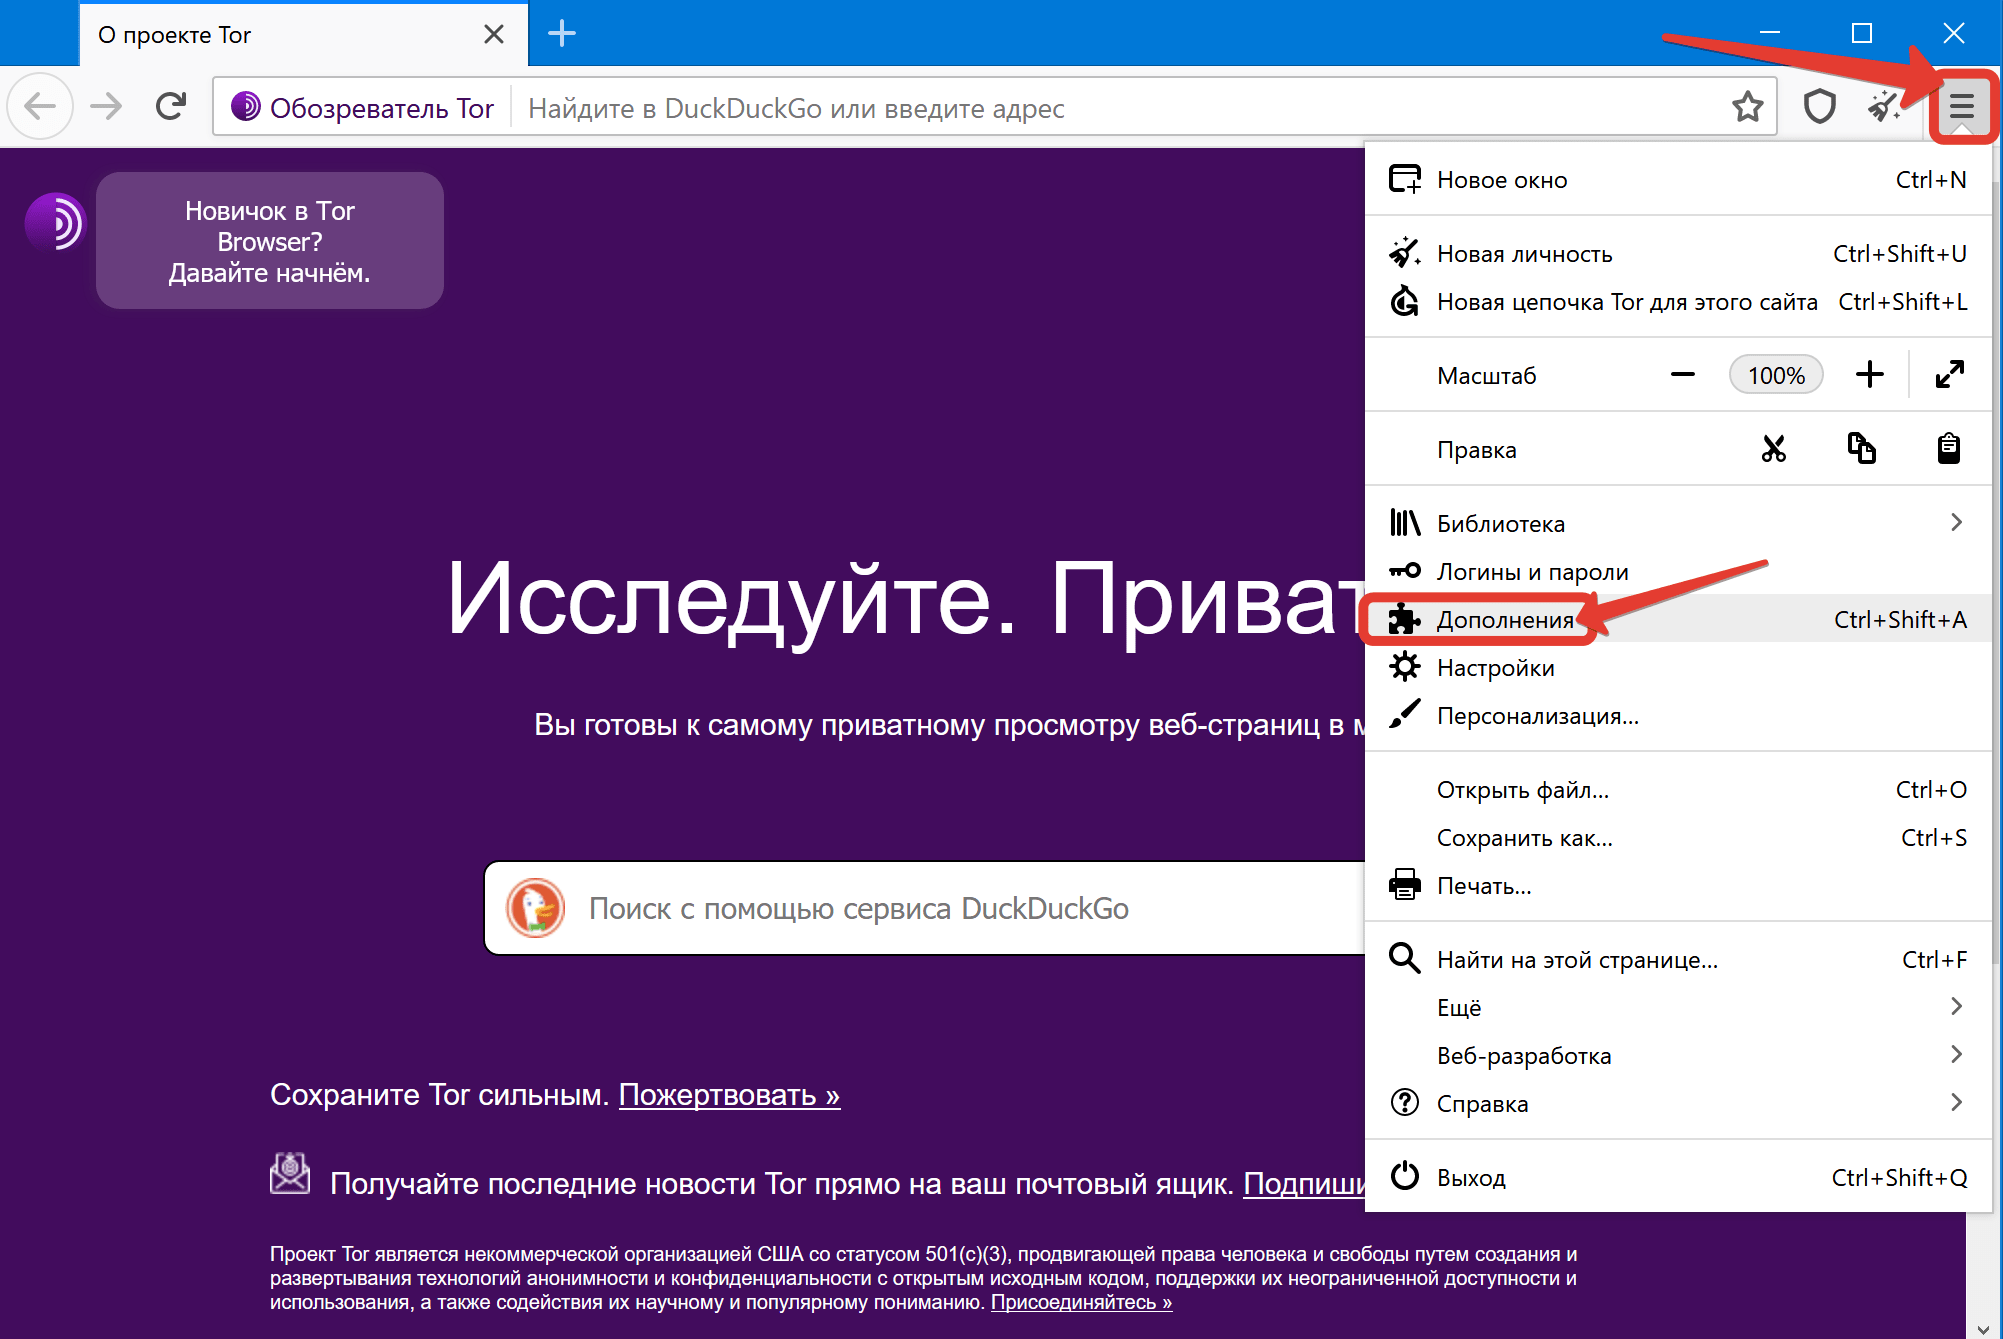 Список адресов в тор браузере даркнет тор браузер официальный сайт скачать бесплатно на русском для windows 8 даркнет